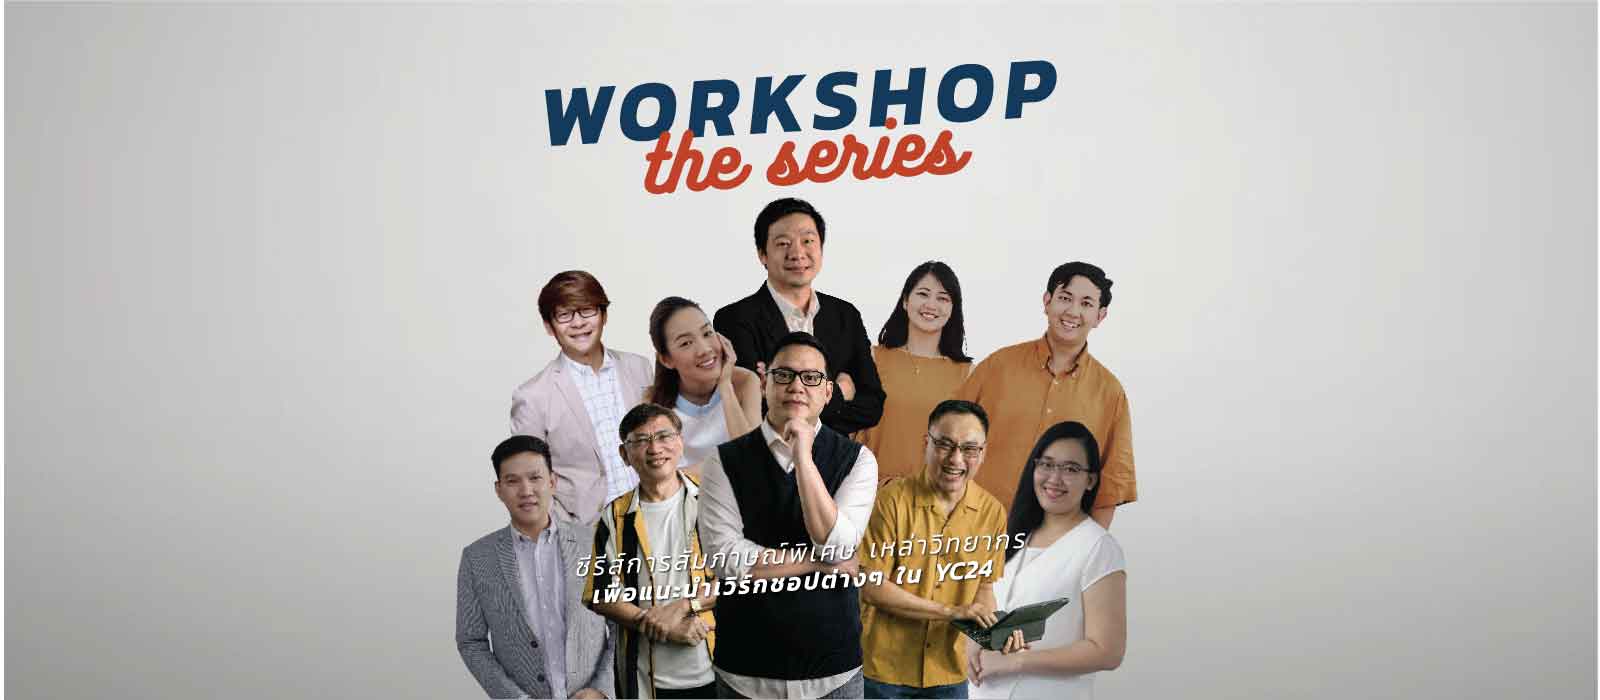 Workshop The Series 01